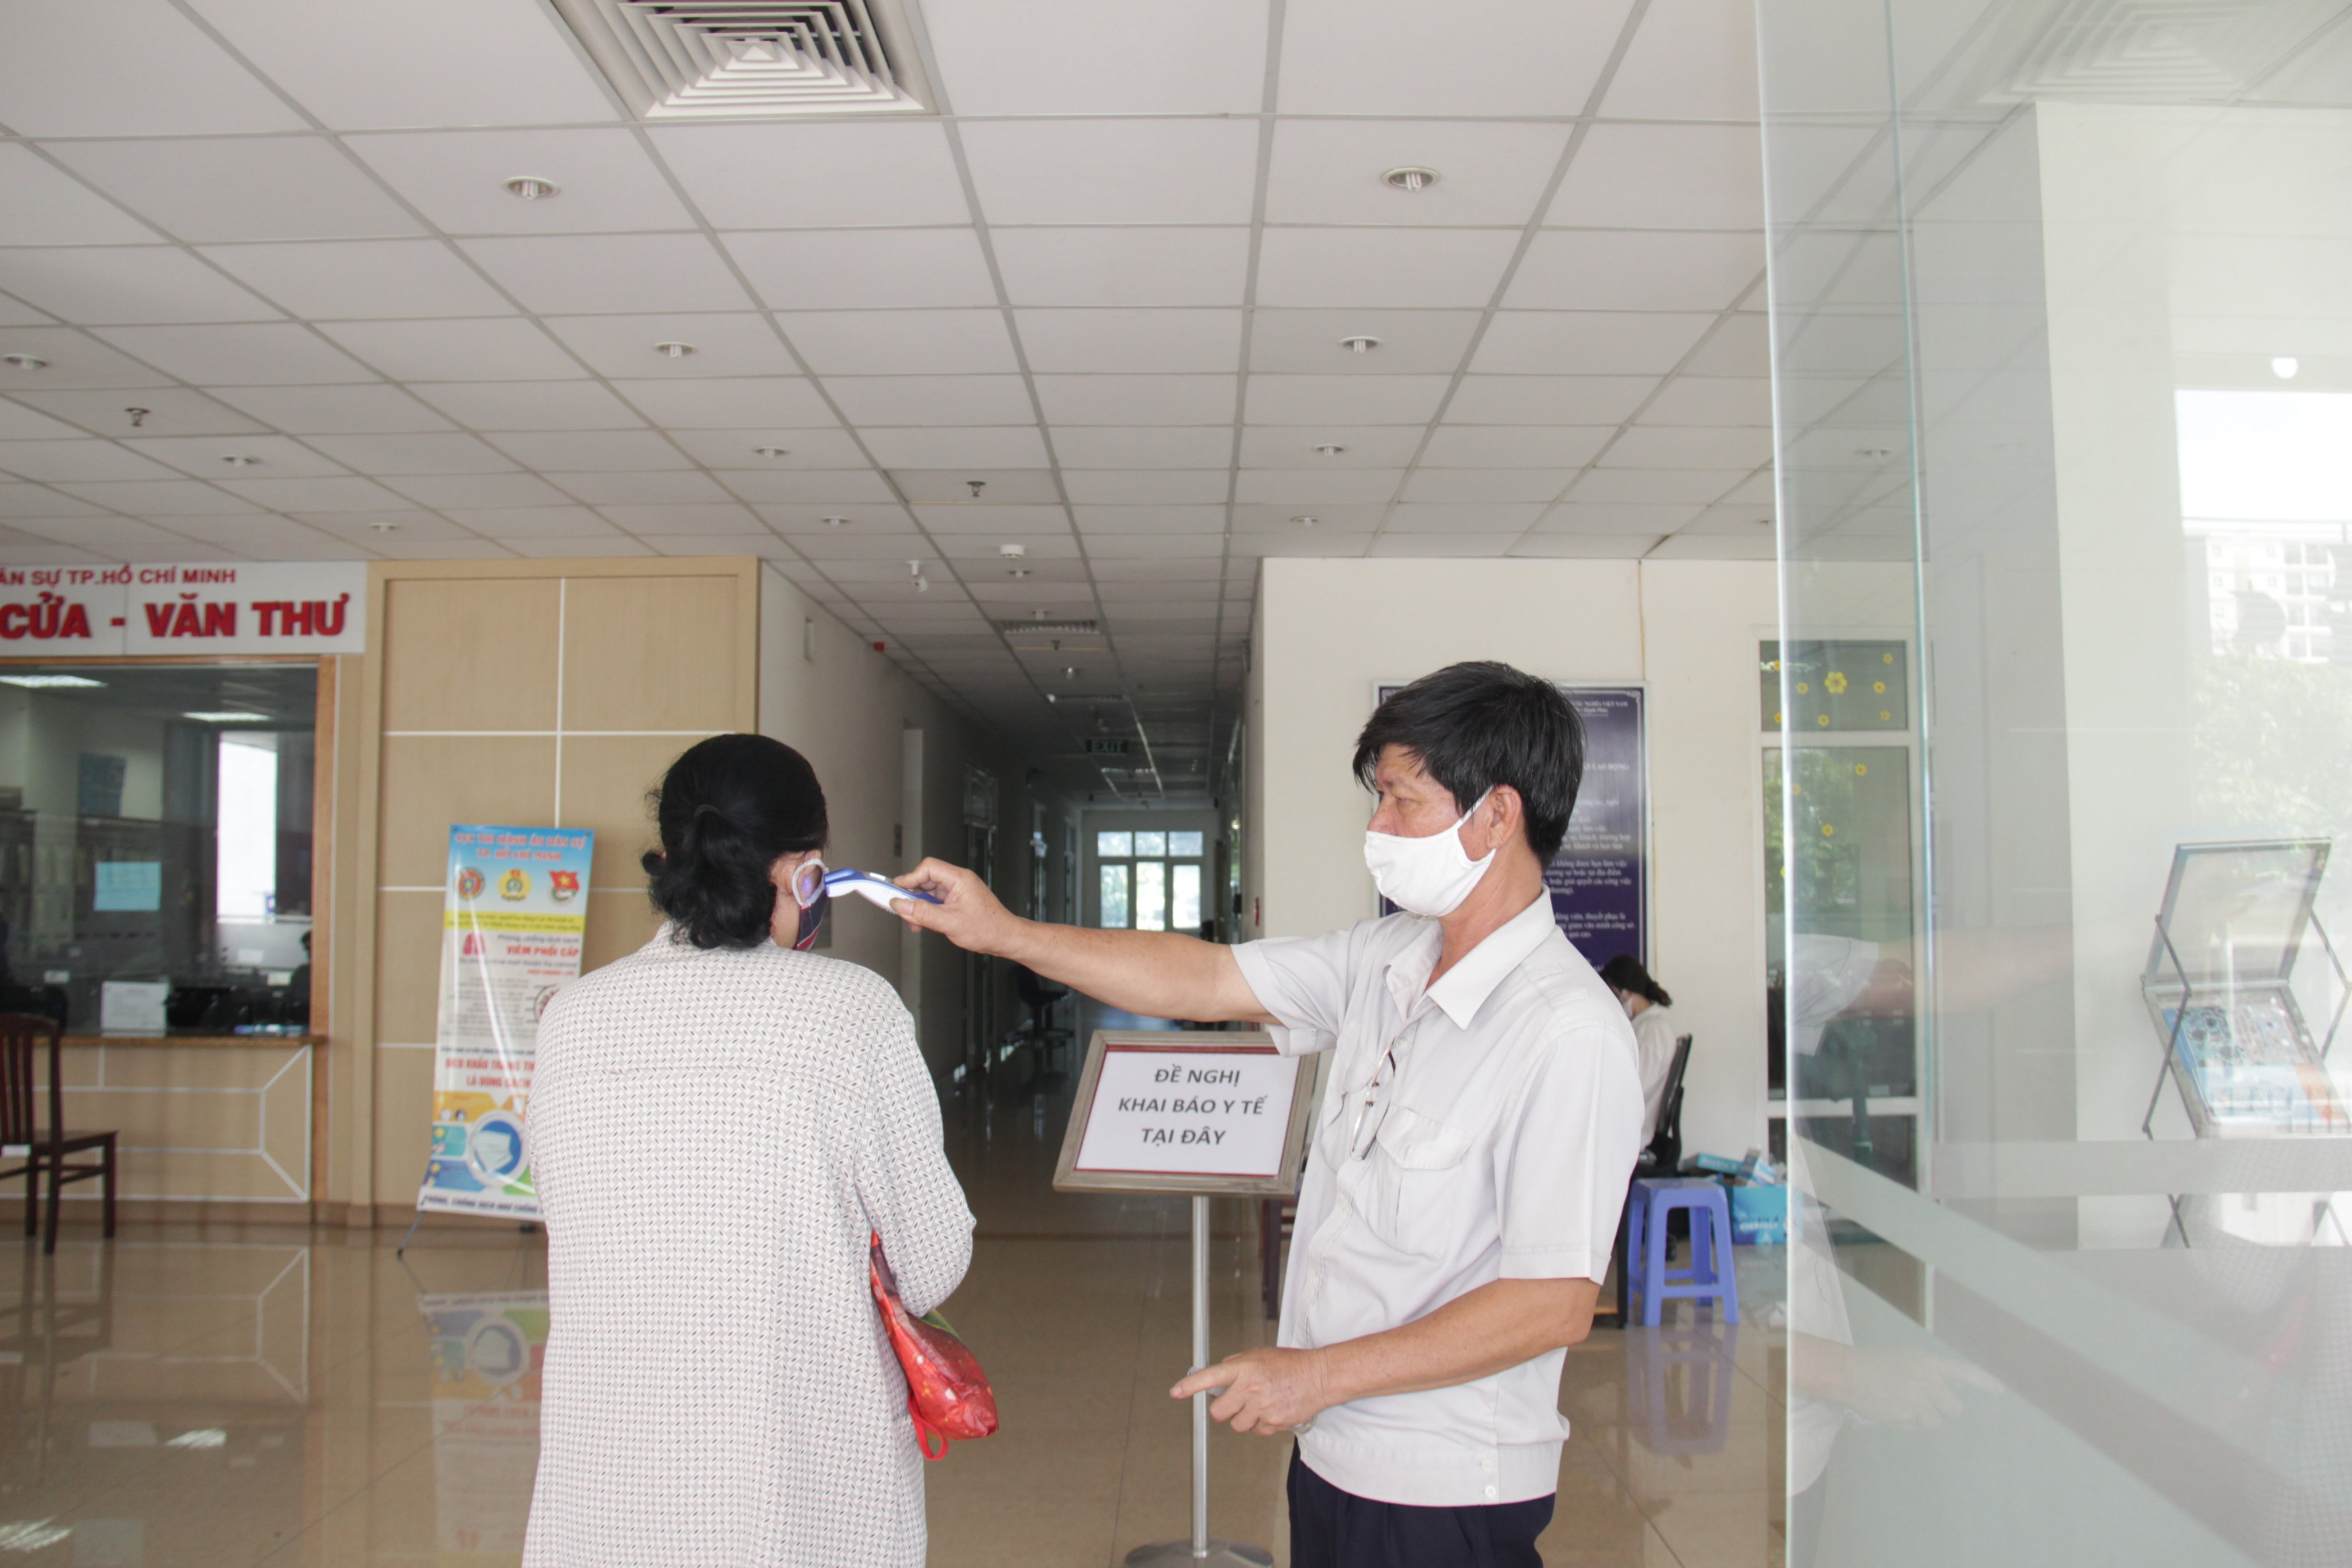 Cục THADS Thành phố Hồ Chí Minh: Kích hoạt lại các biện pháp phòng, chống dịch Covid-19